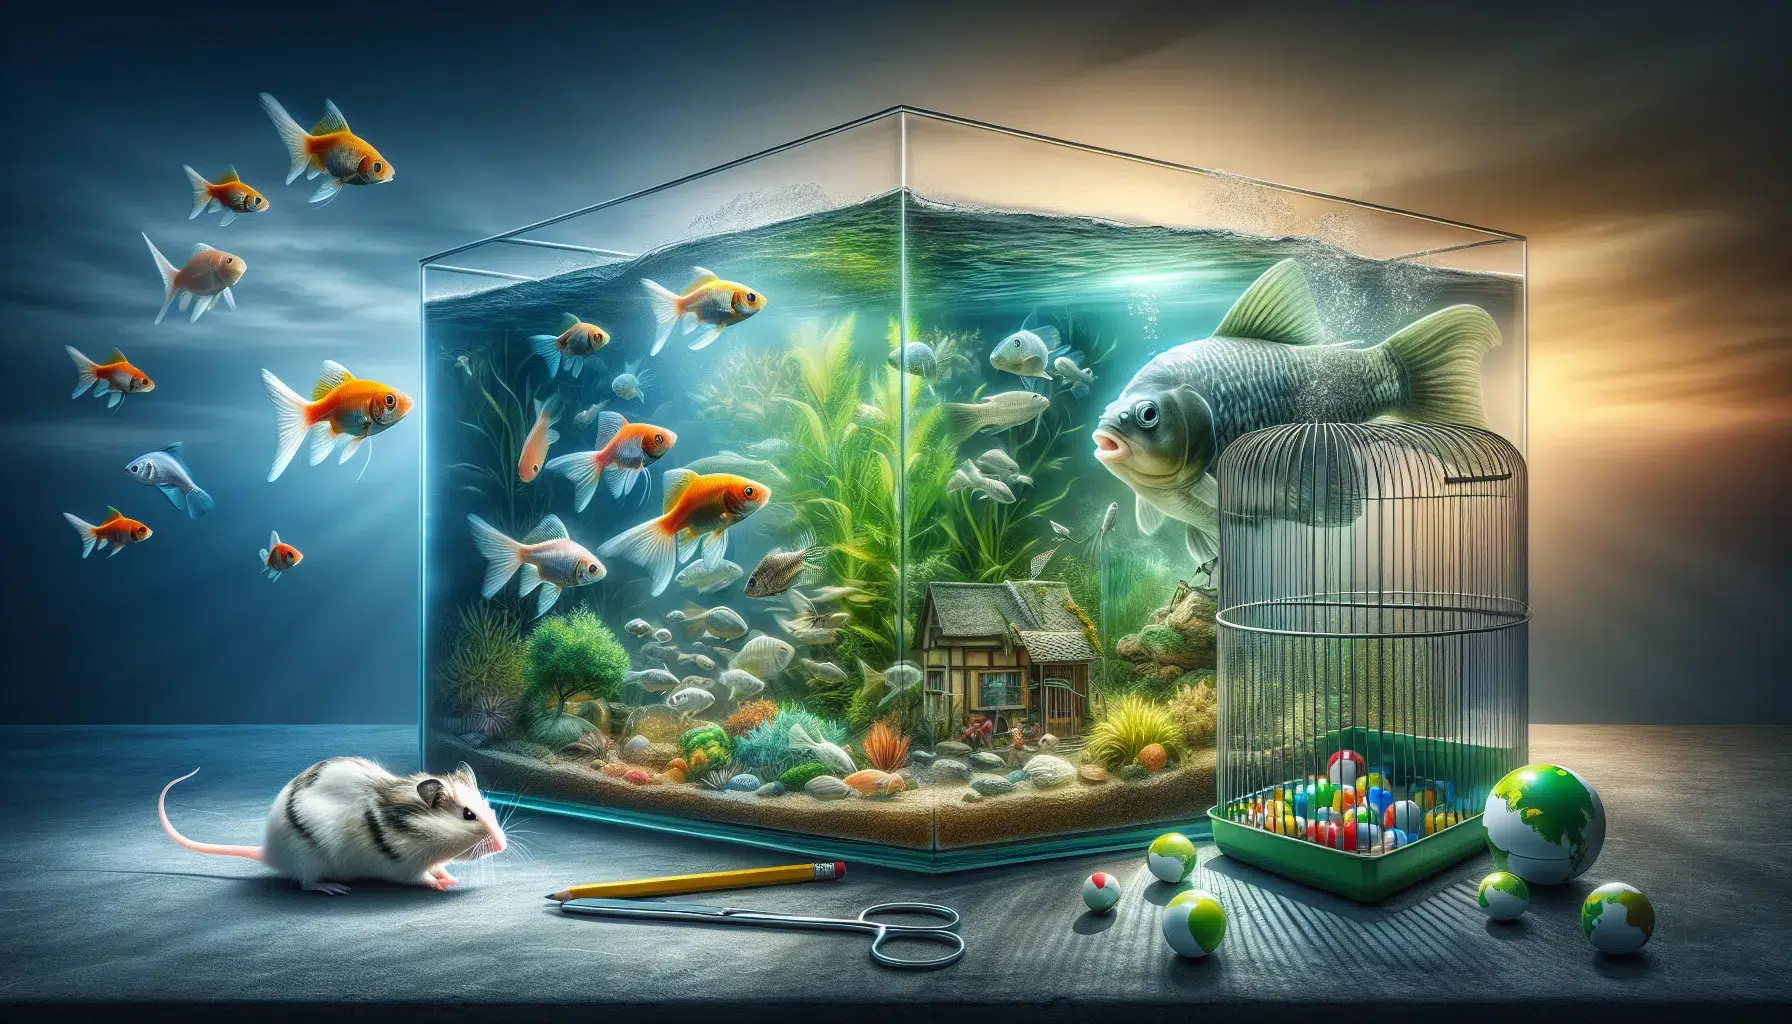 Foto de un acuario con varios peces nadando y un hámster explorando su jaula, ilustrando el impacto de la Ley en la tenencia de estos animales de compañía.